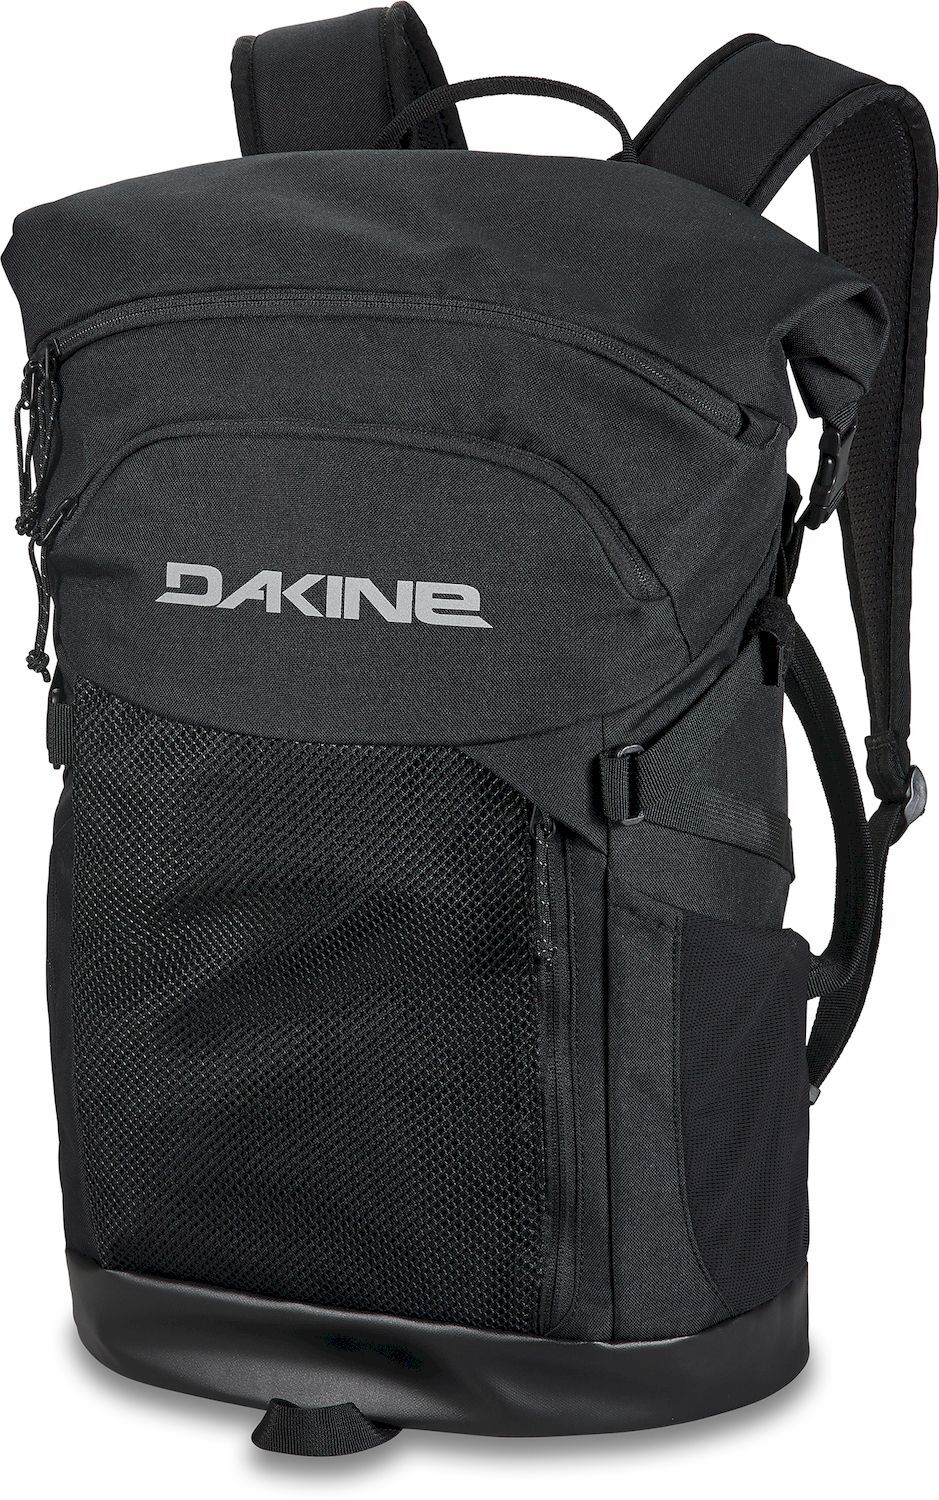 Dakine Mission Surf Pack 30L - Backpack